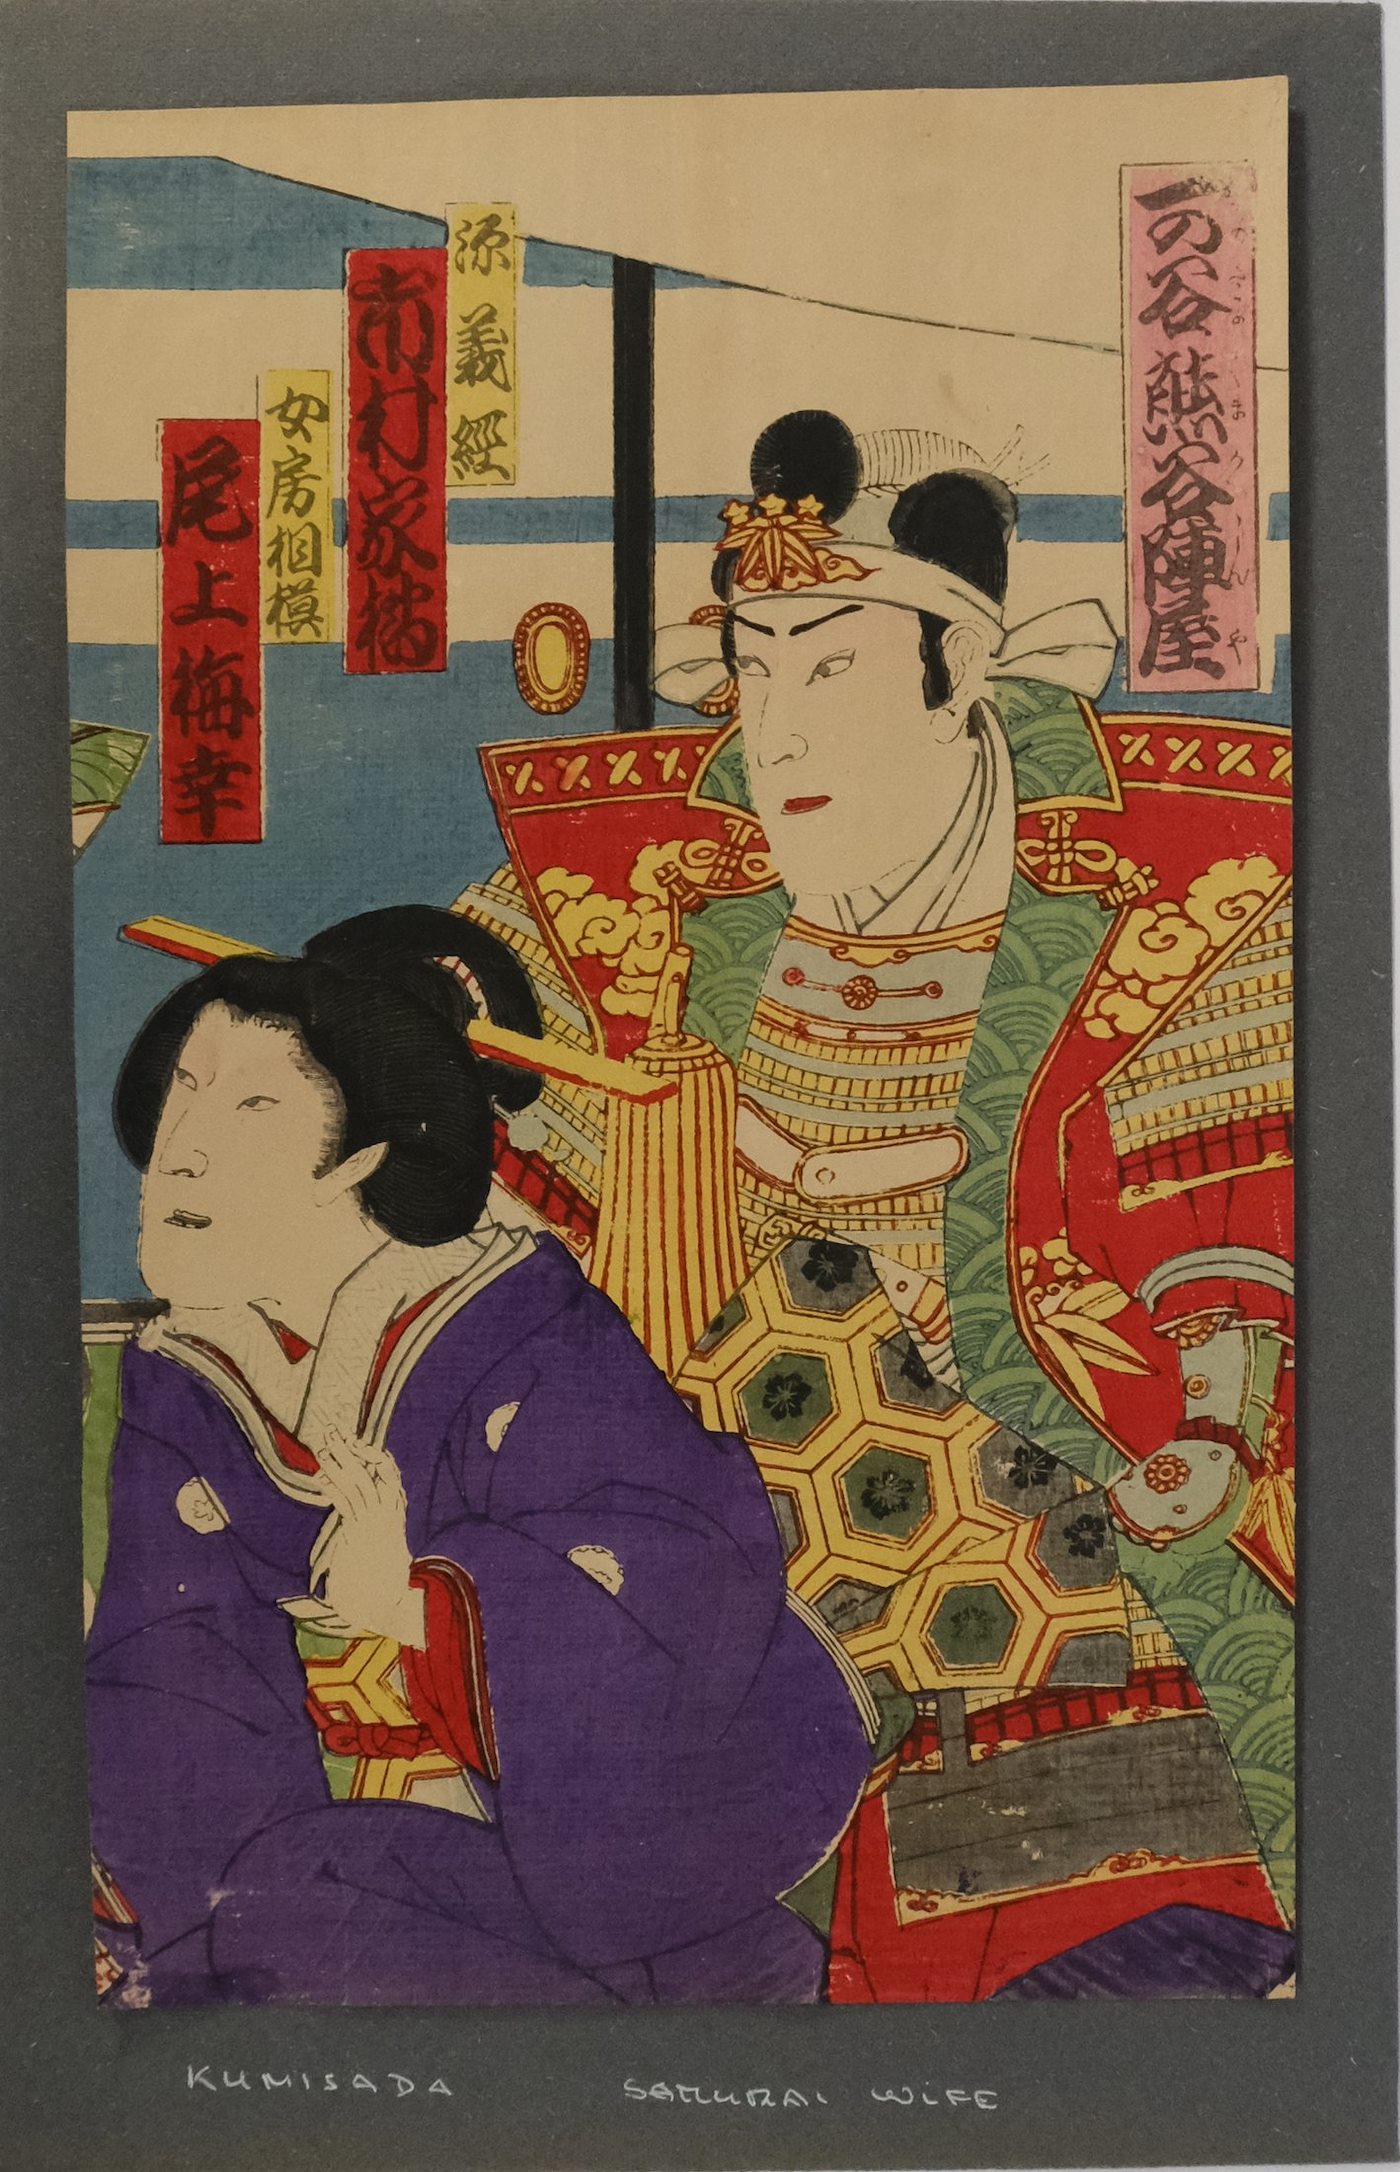 Kunisada - Samurai wife